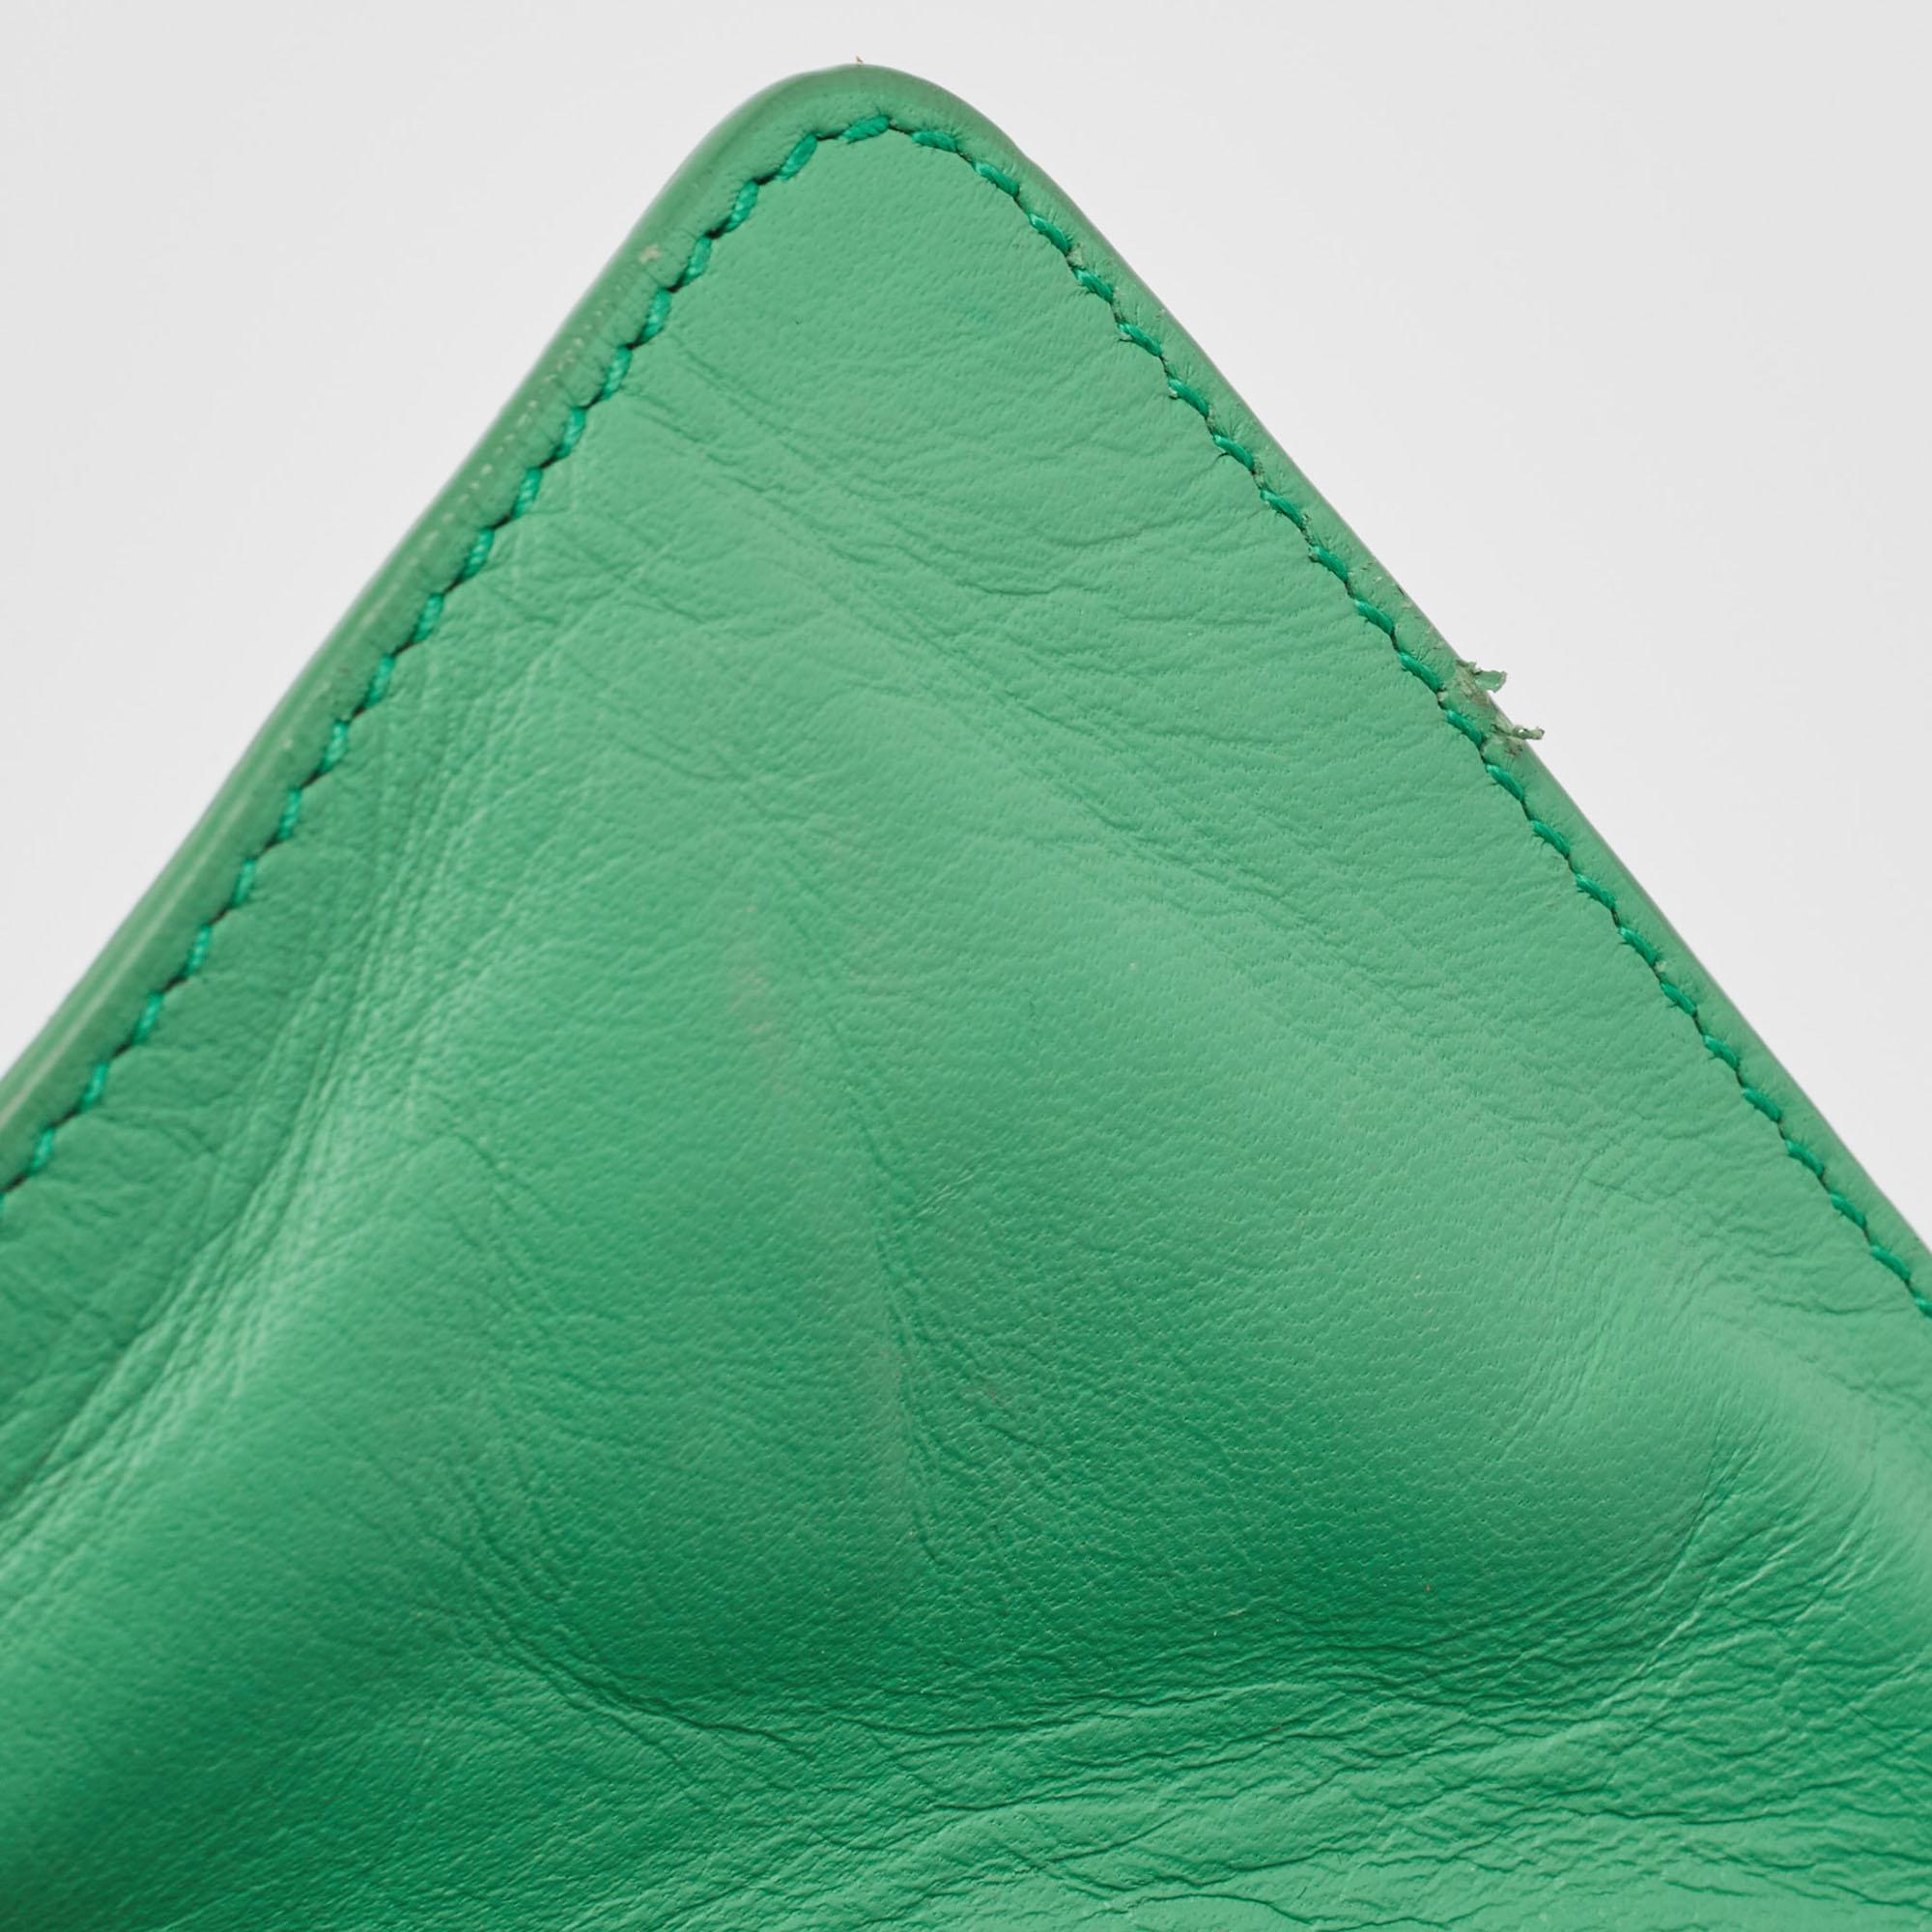 Bottega Veneta Green Intrecciato Leather  Limited Edition 0147/1000 Cabat Tote For Sale 5